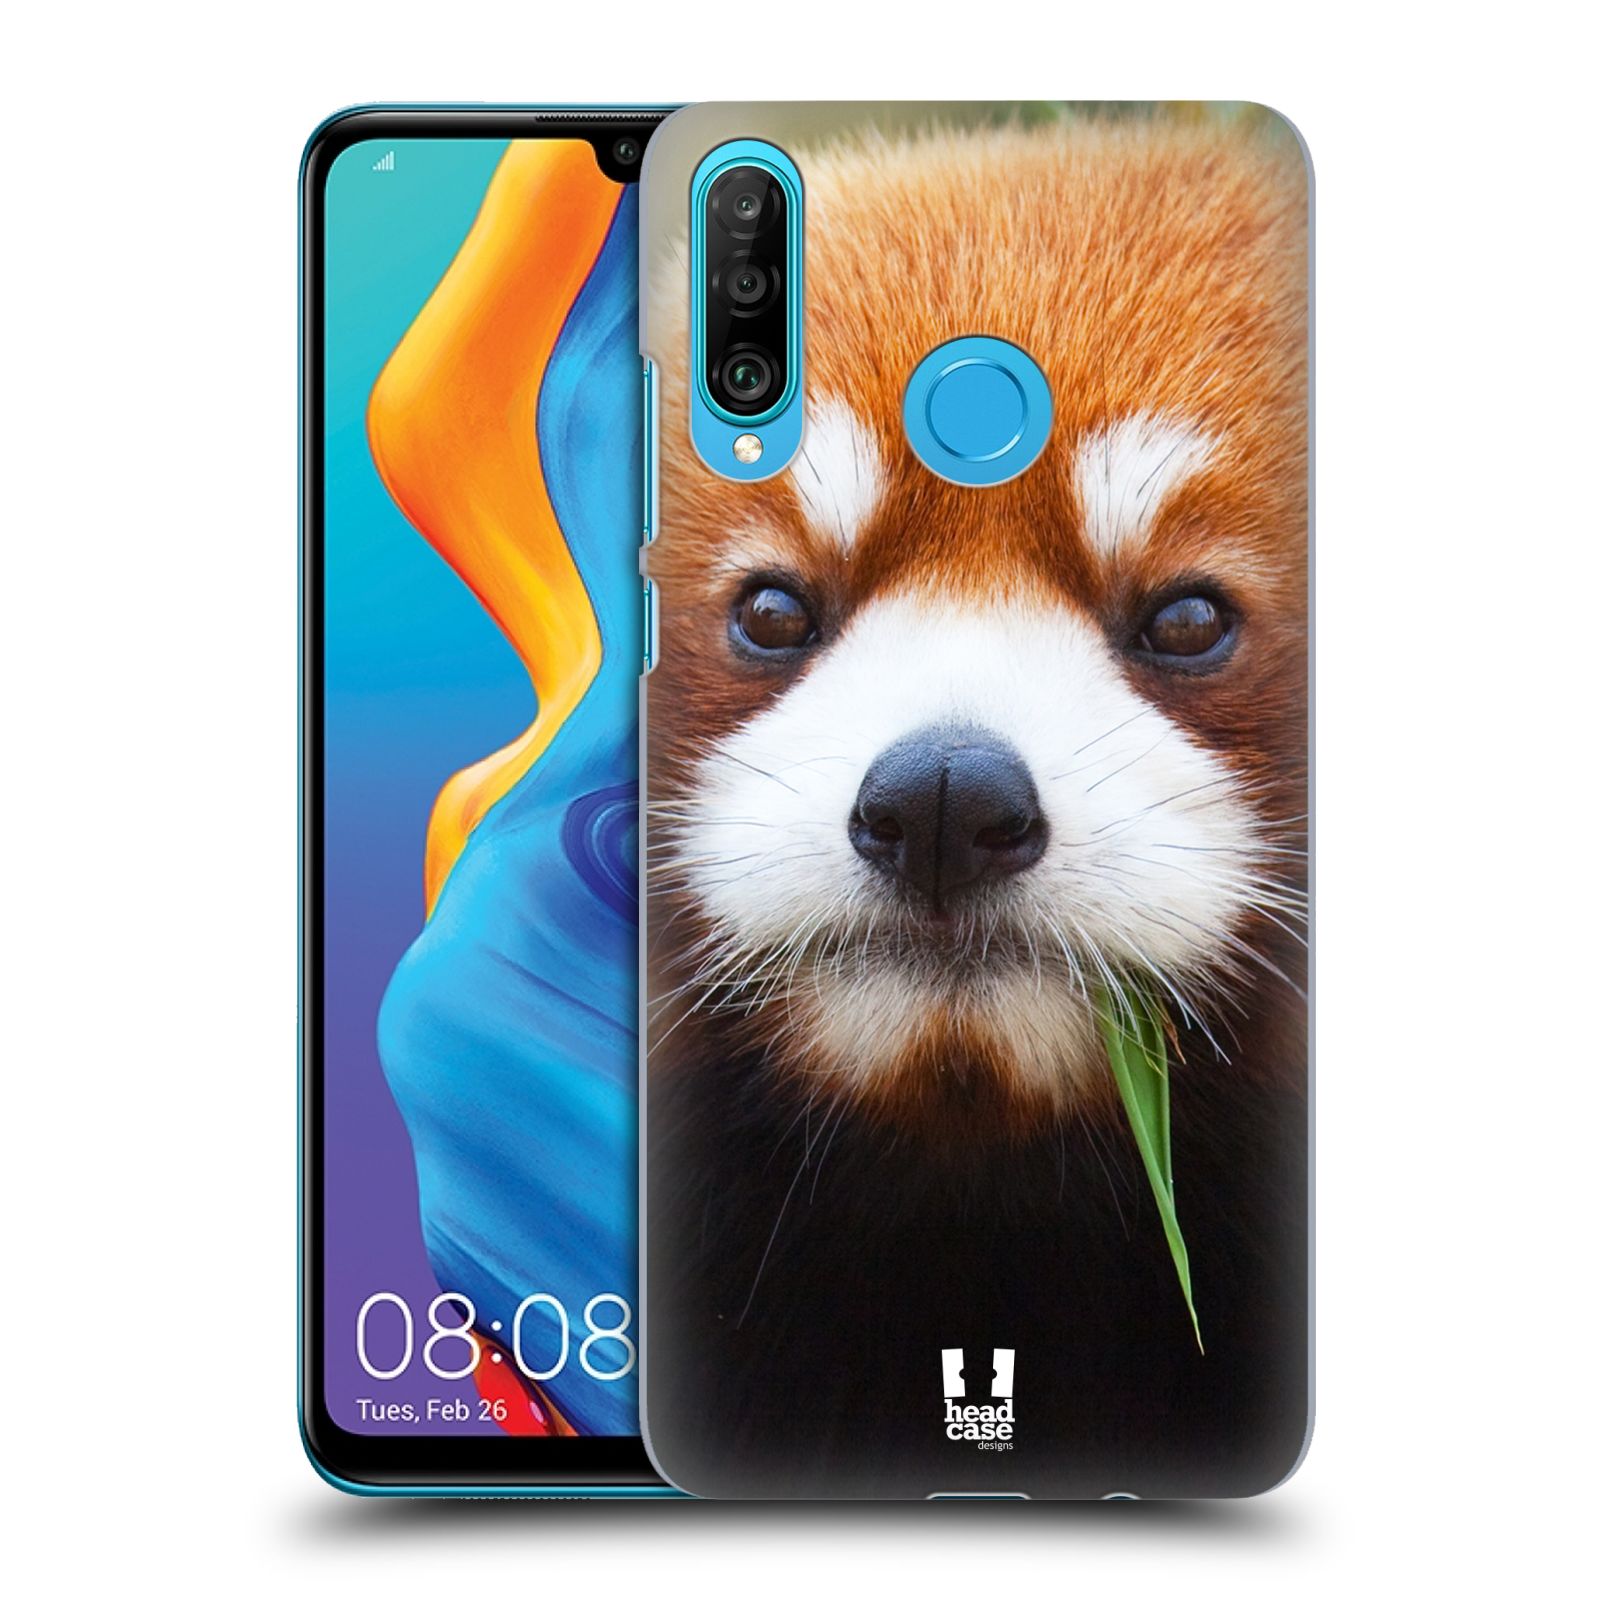 Pouzdro na mobil Huawei P30 LITE - HEAD CASE - vzor Divočina, Divoký život a zvířata foto PANDA HNĚDÁ